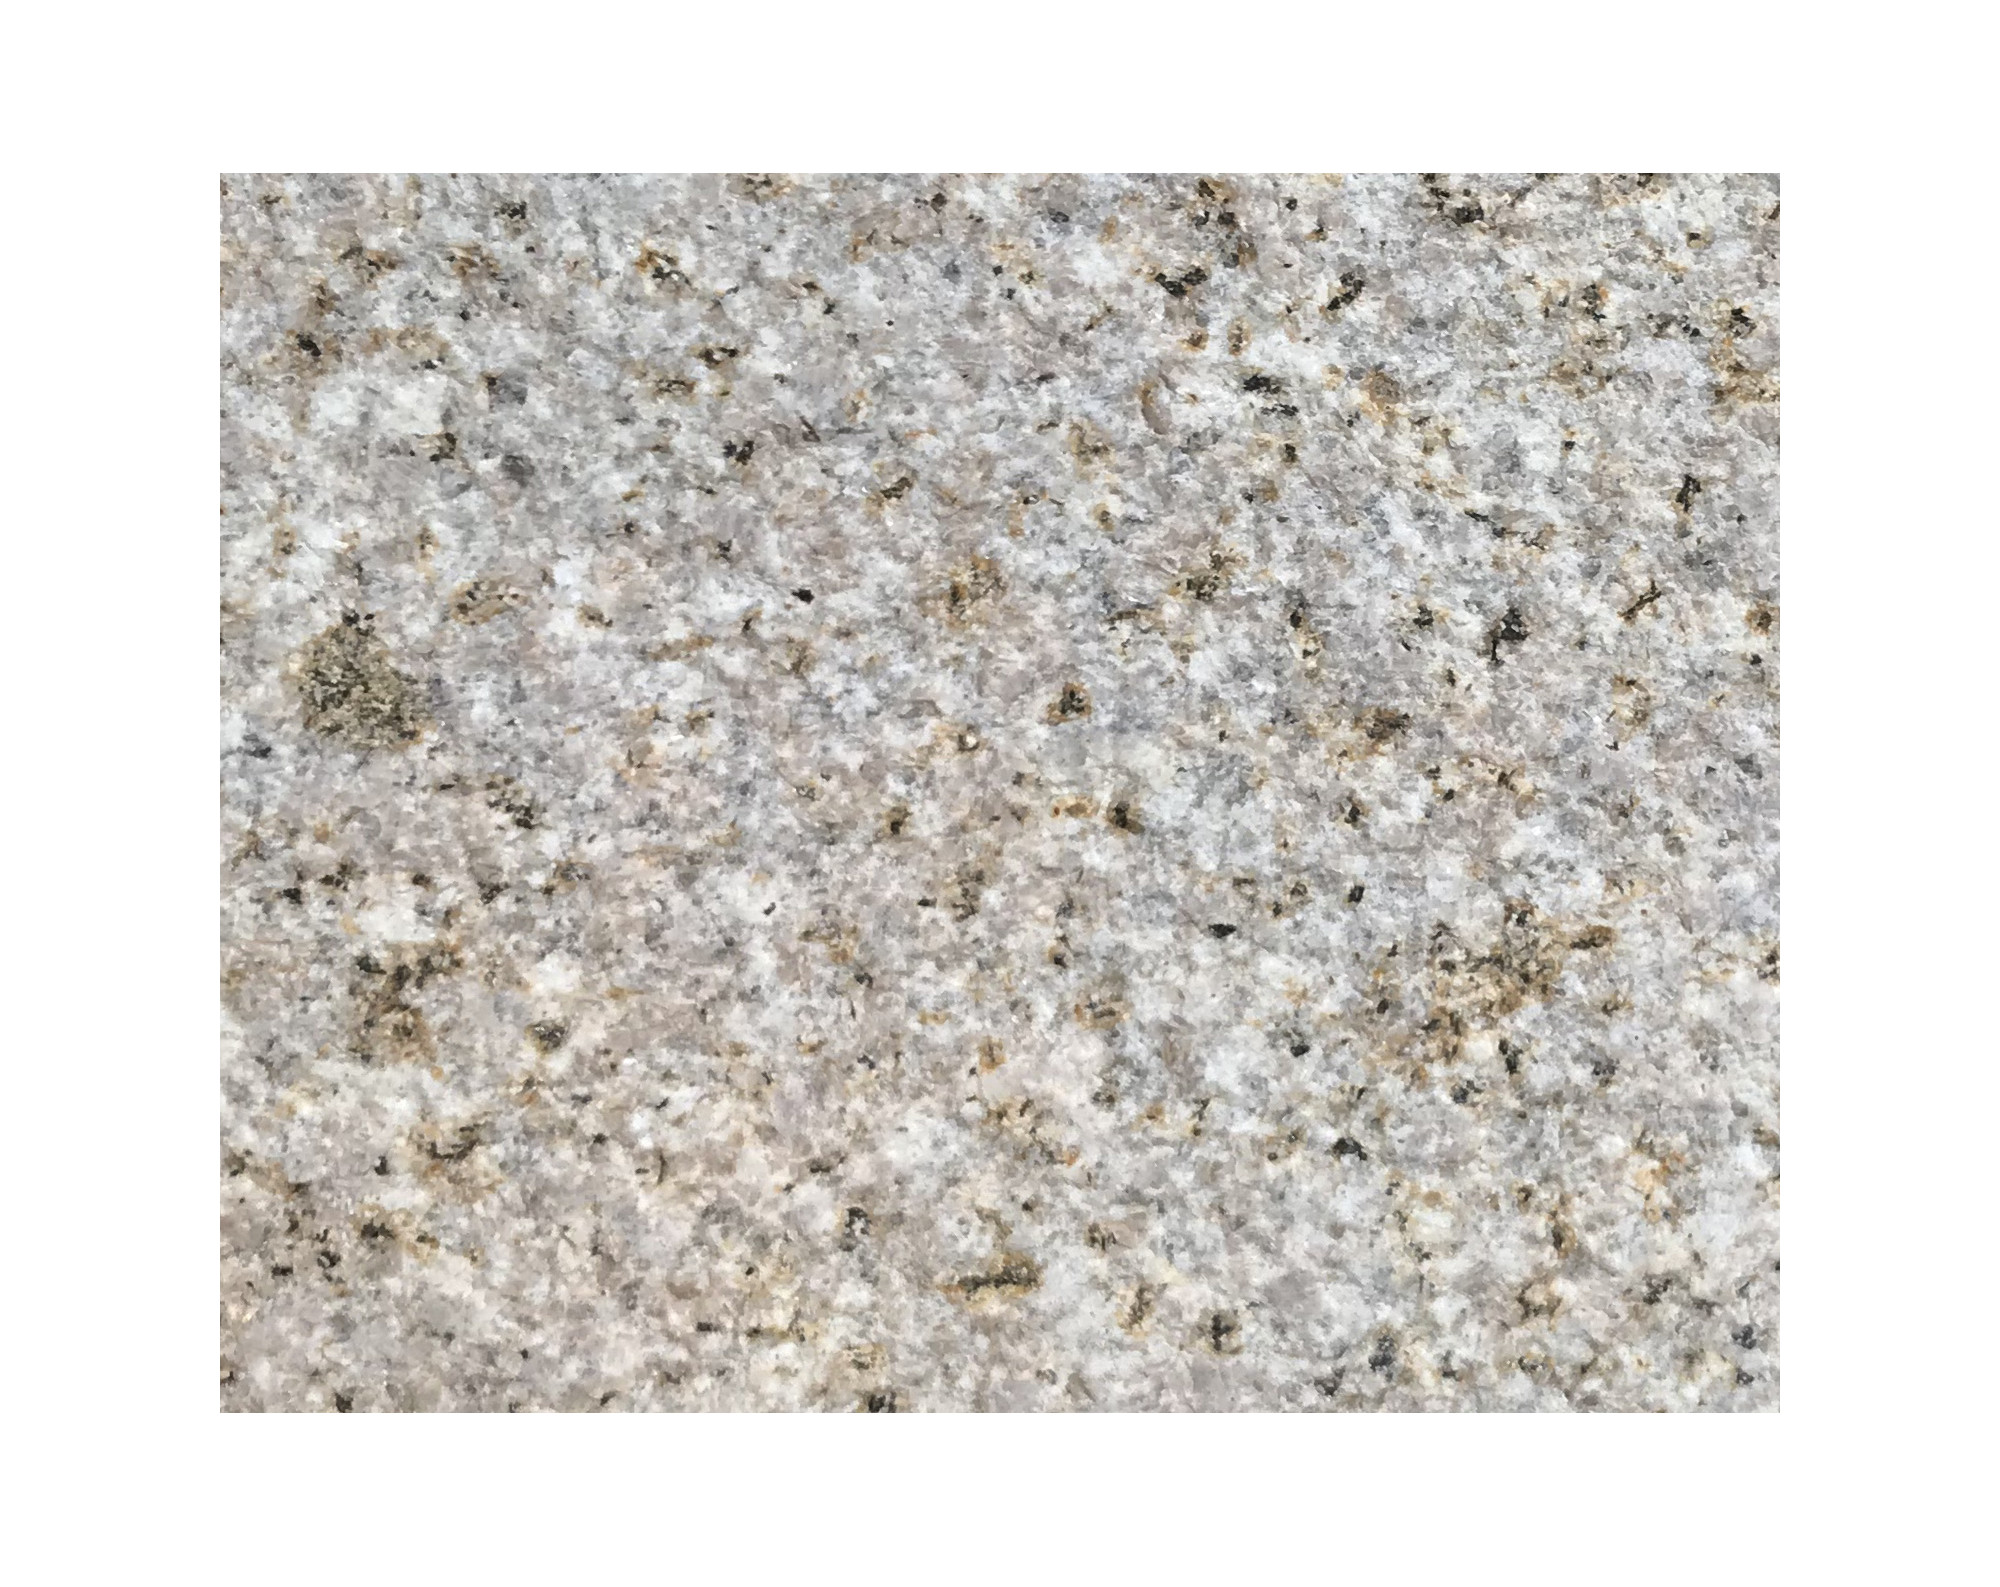 Harmo roc napoliset, natura-serie, ovaal d:3,50mx6,20m:, zachtzand, graniet